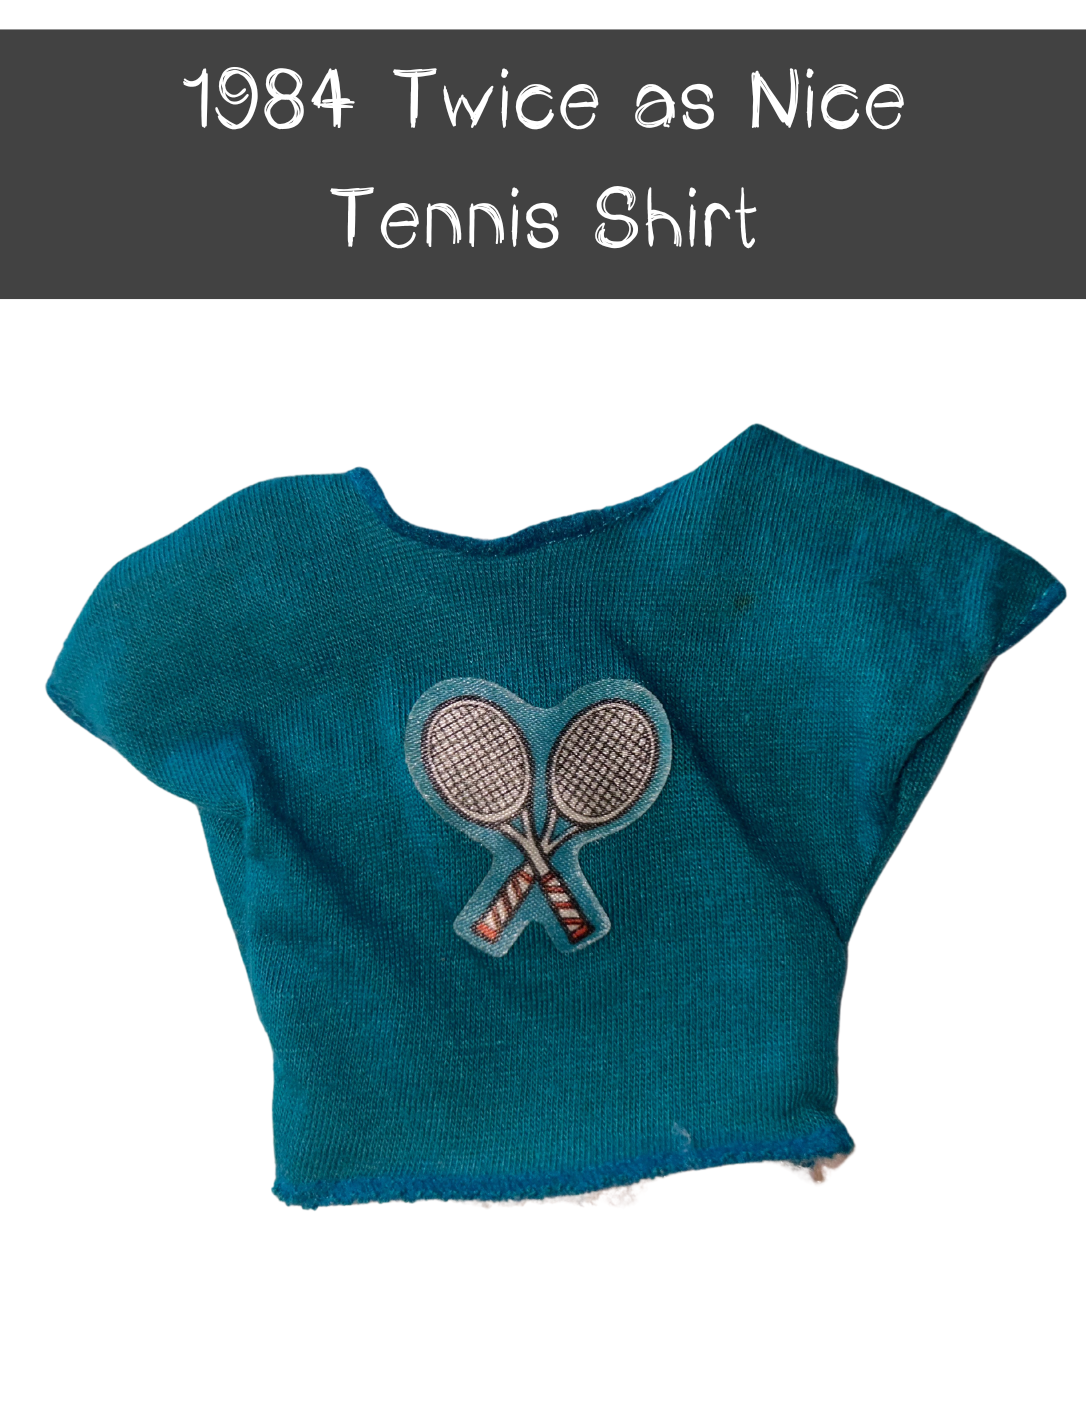 1984 Twice as Nice Tennis Shirt